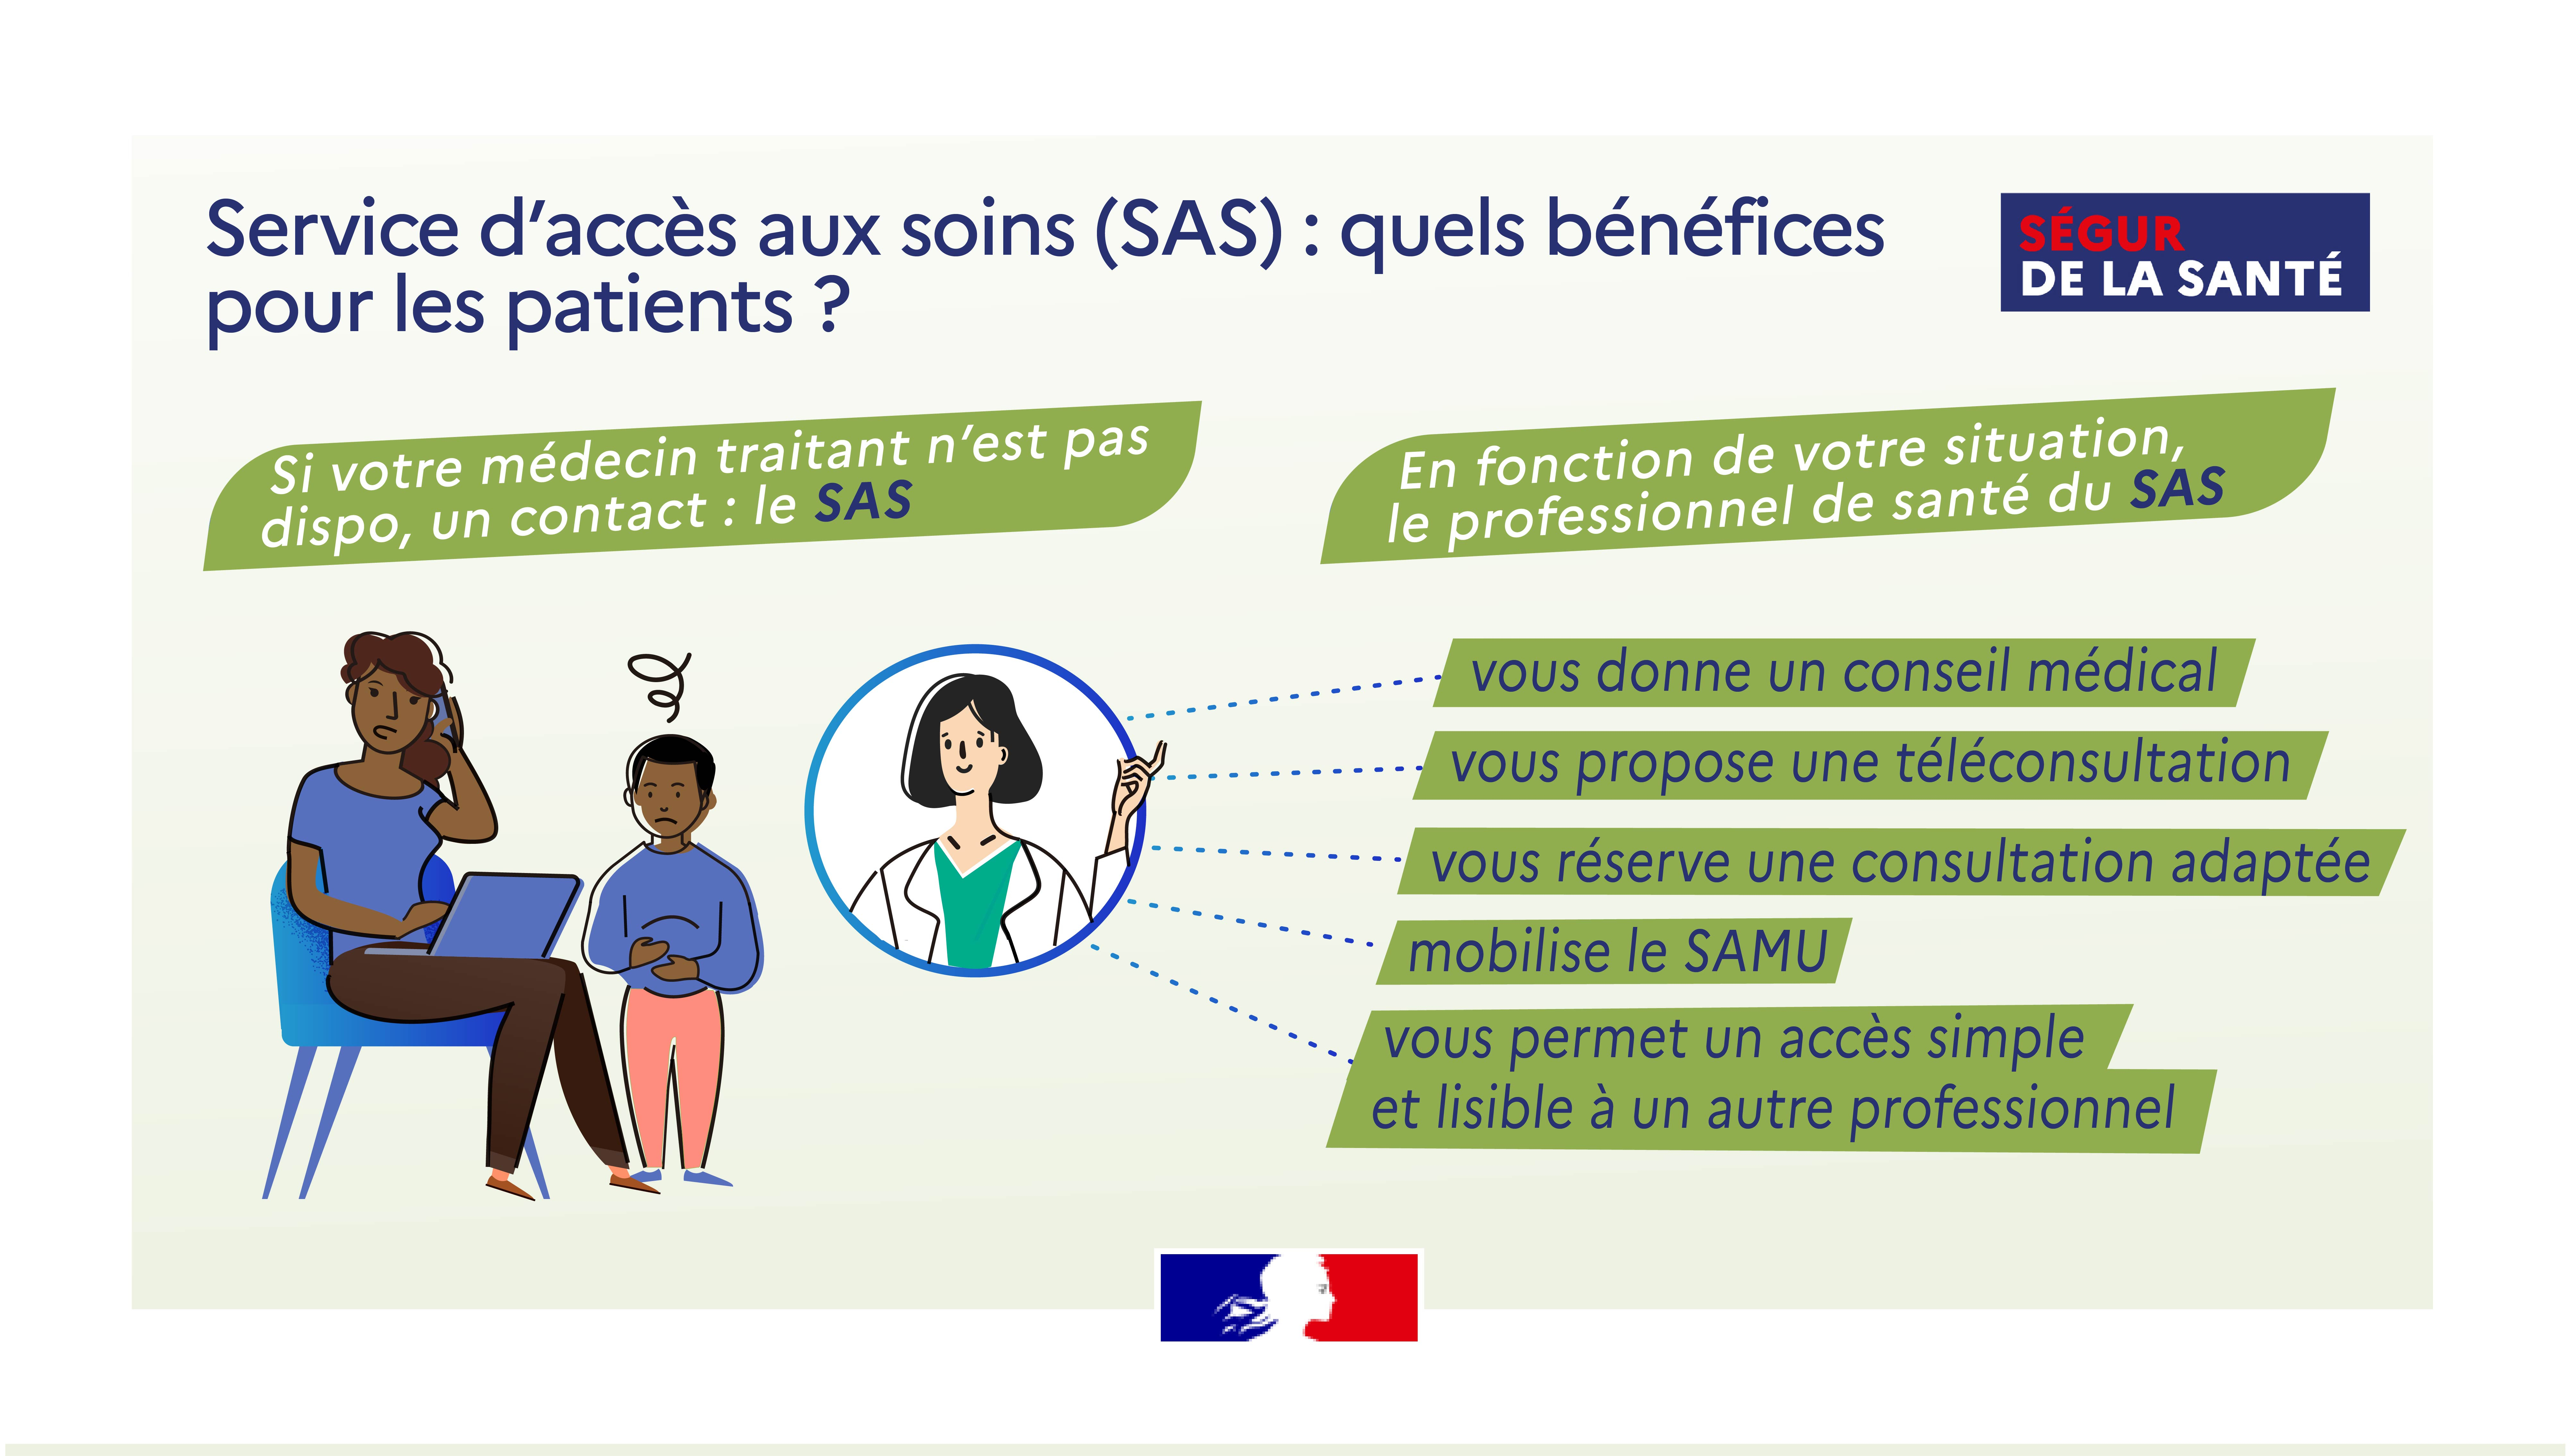 Service d'accès aux soins (SAS) - Schéma SAS Bénéfices Patients